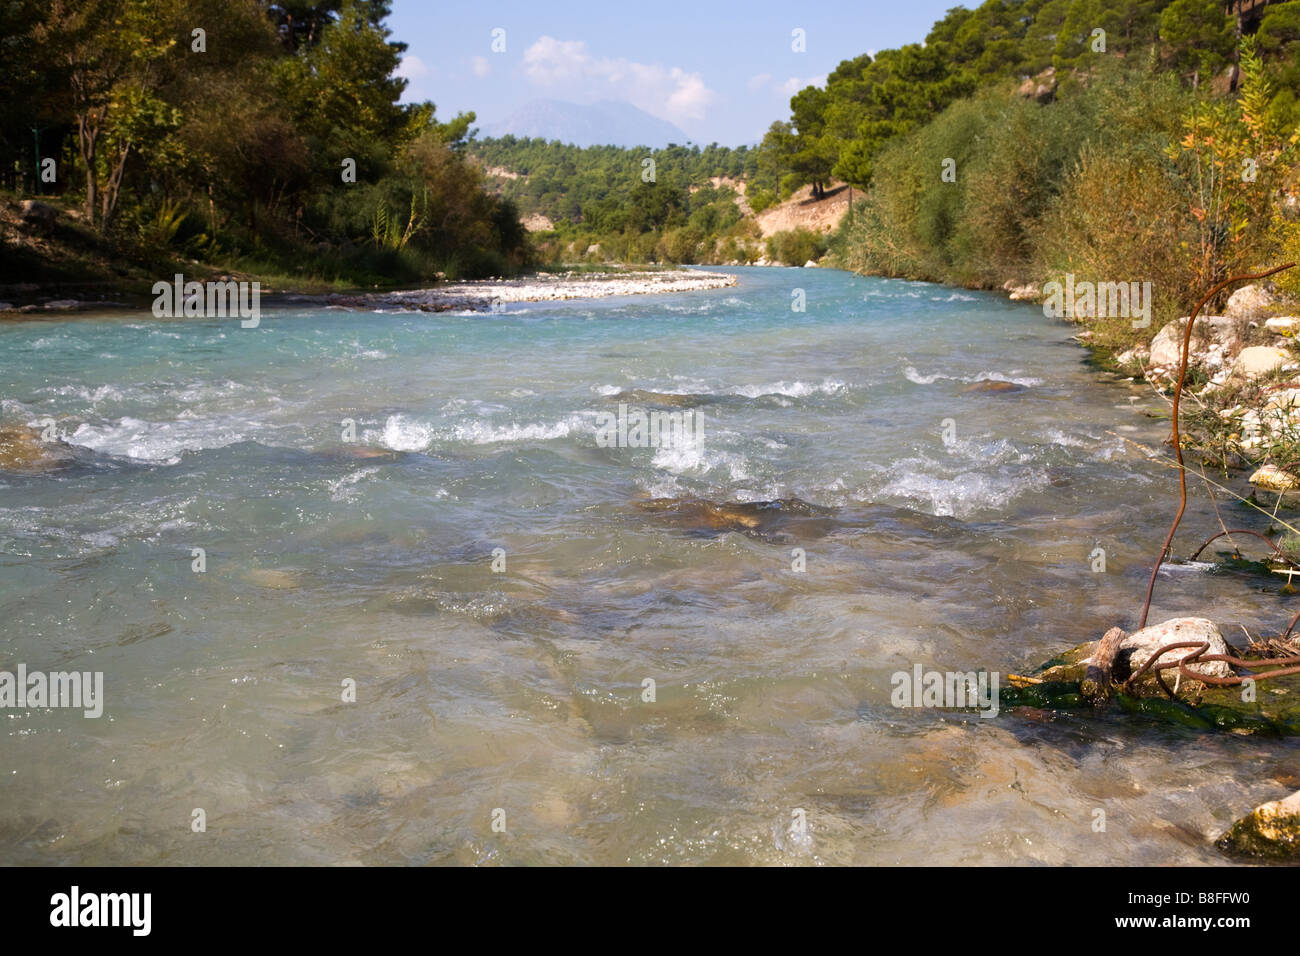 Une rivière qui coule près de la Gorge de Saklikent dans Yakapark Yaka dans Village (Tlos) Turquie Banque D'Images